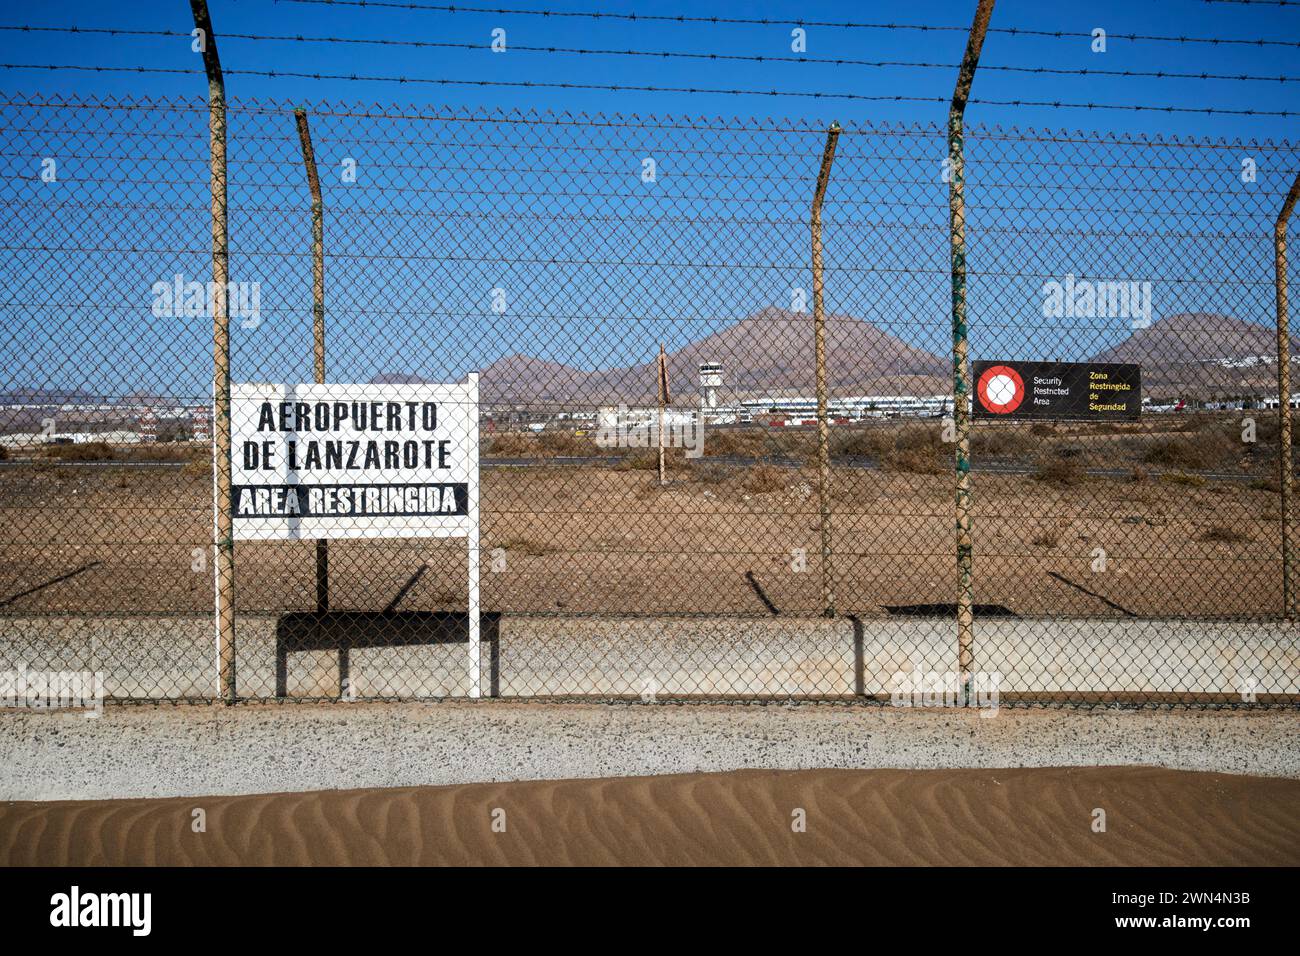 aeropuerto de lanzarote area restringida panneaux d'avertissement de sécurité de zone réglementée sur la clôture périphérique de l'aéroport de Lanzarote, îles Canaries, espagne Banque D'Images